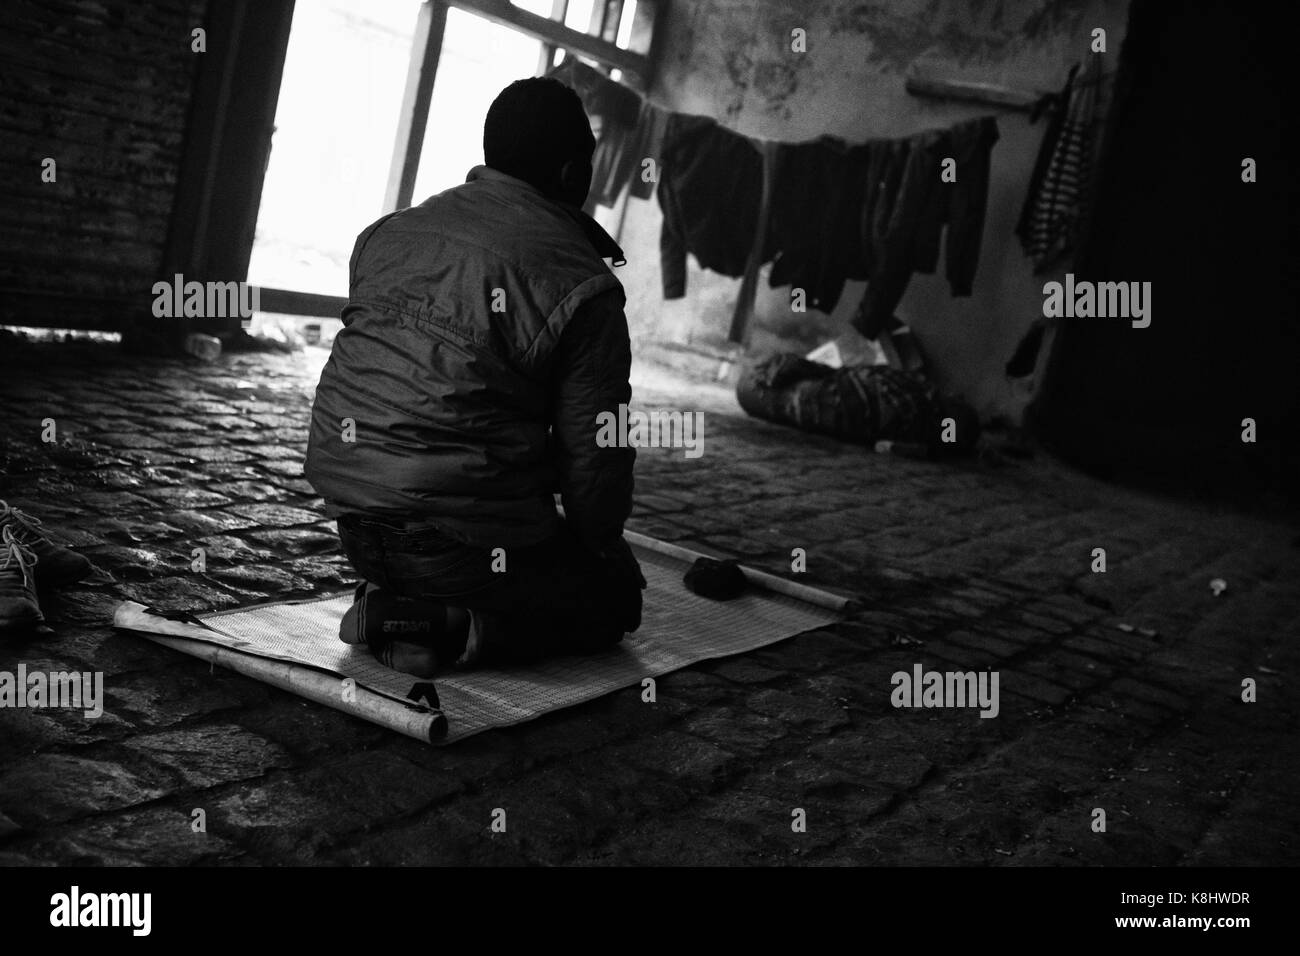 Un demandeur d'asile soudanais prie vers La Mecque dans un entrepôt désaffecté, illégale appelée "Africa House" à Calais, France le 18 mars 2010. Asyl africains Banque D'Images